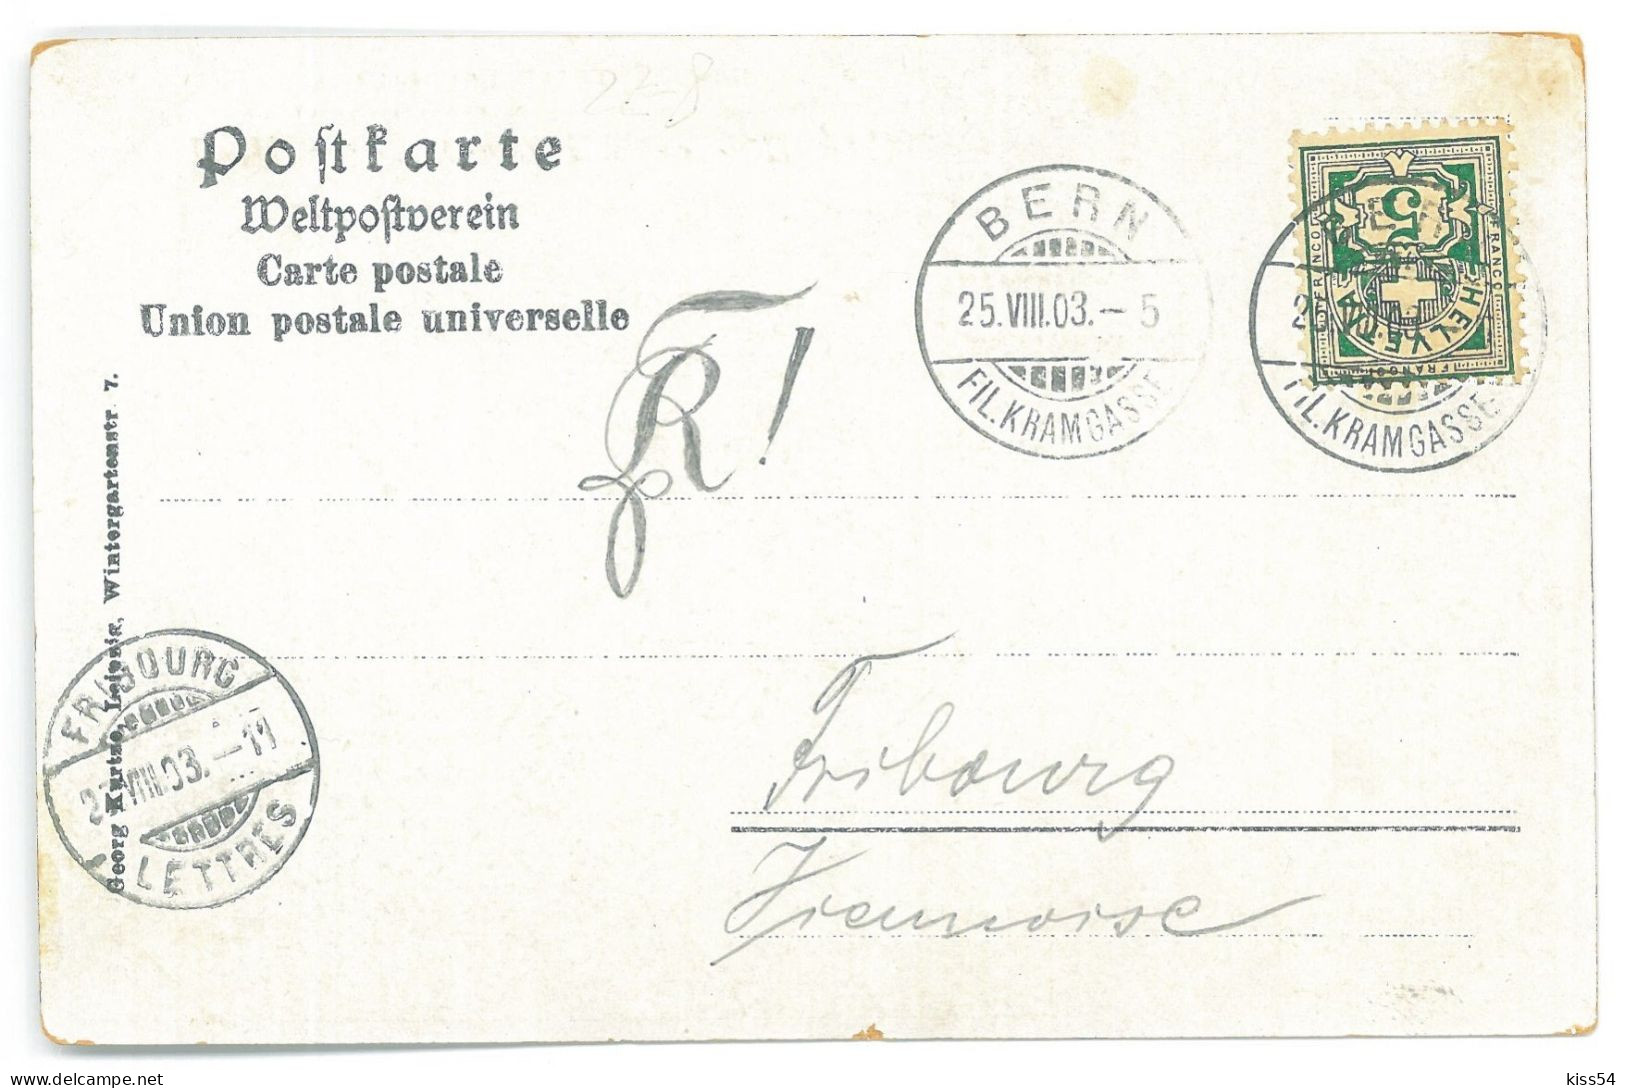 RO - 25062 TARAF Vladescu, Litho, Romania - Old Postcard - Used - 1903 - Roumanie